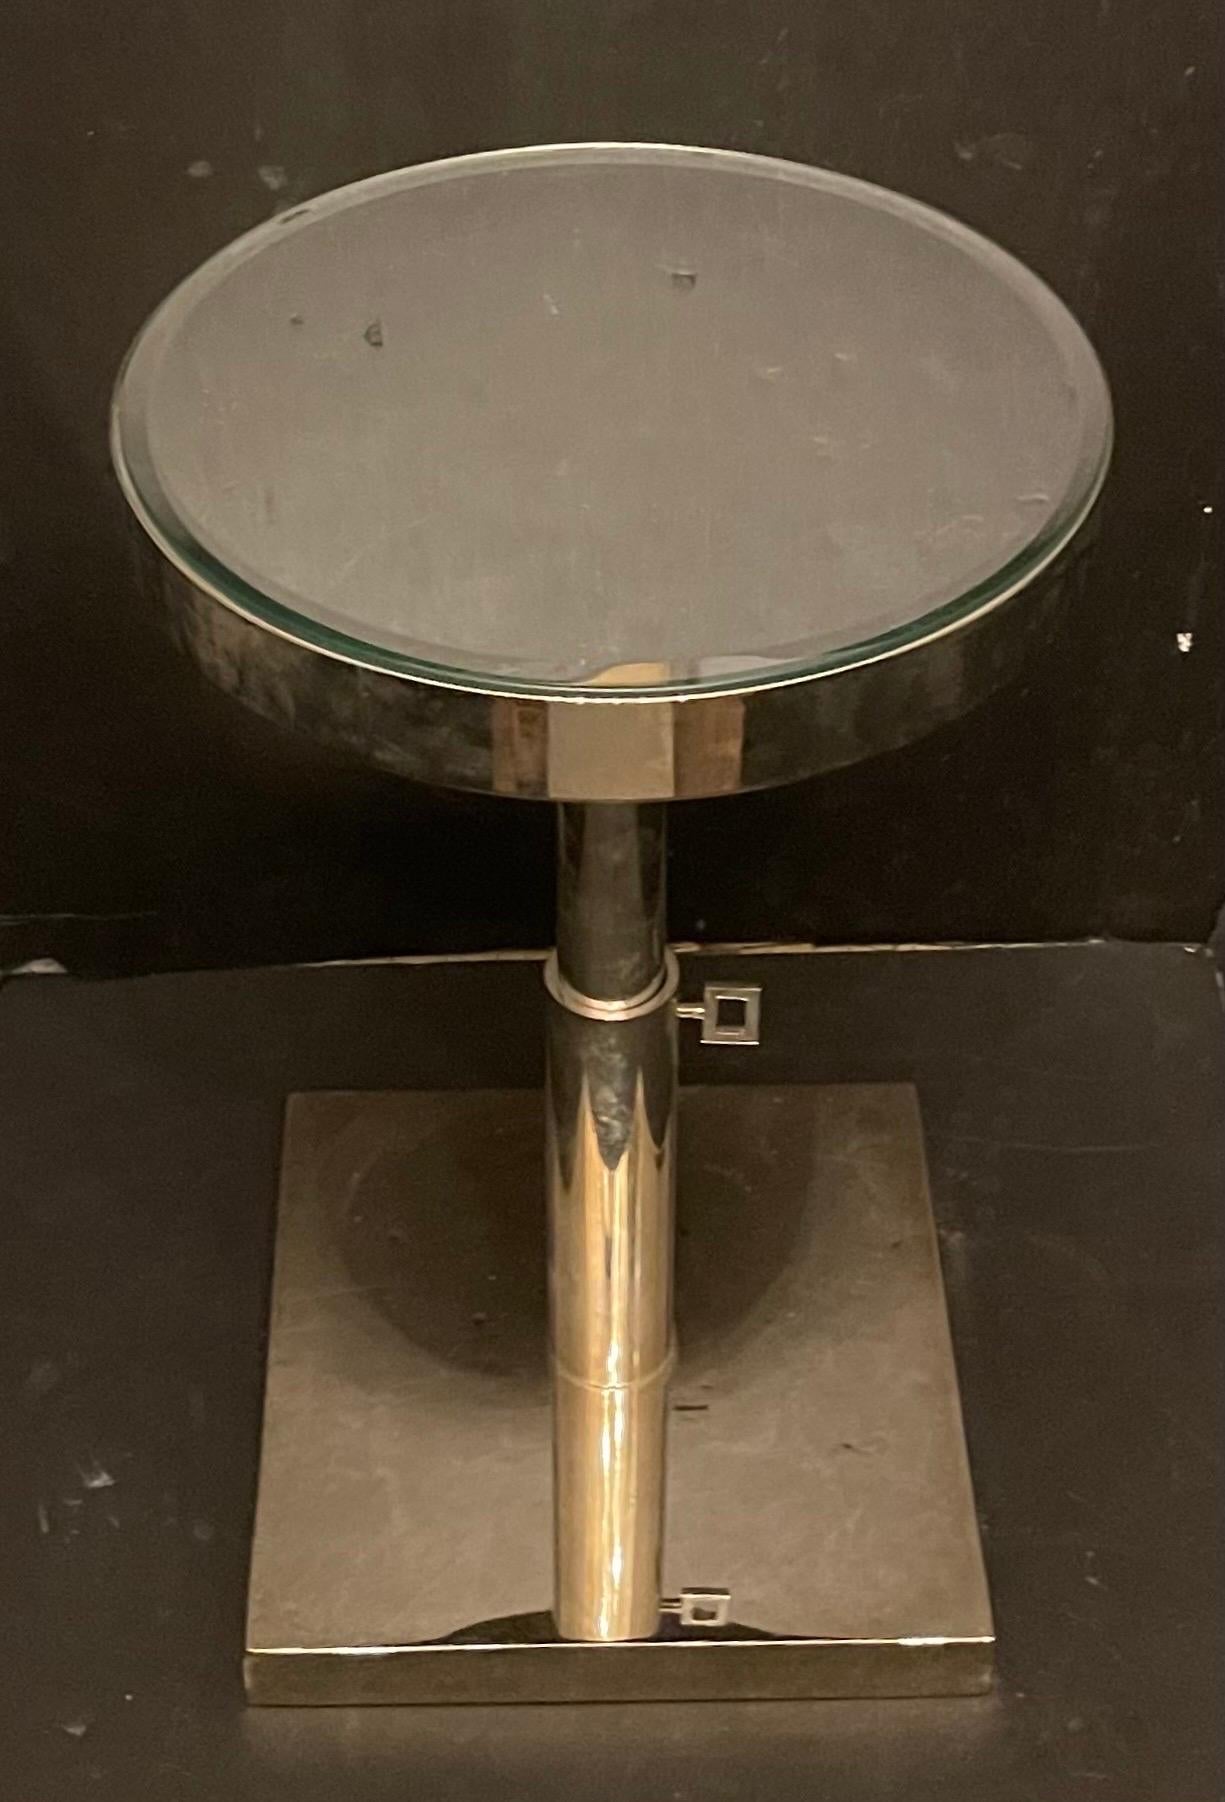 Magnifique table d'appoint télescopique Lorin Marsh en nickel poli/chrome à plateau rond et miroir
Le plateau est rond (12 1/4